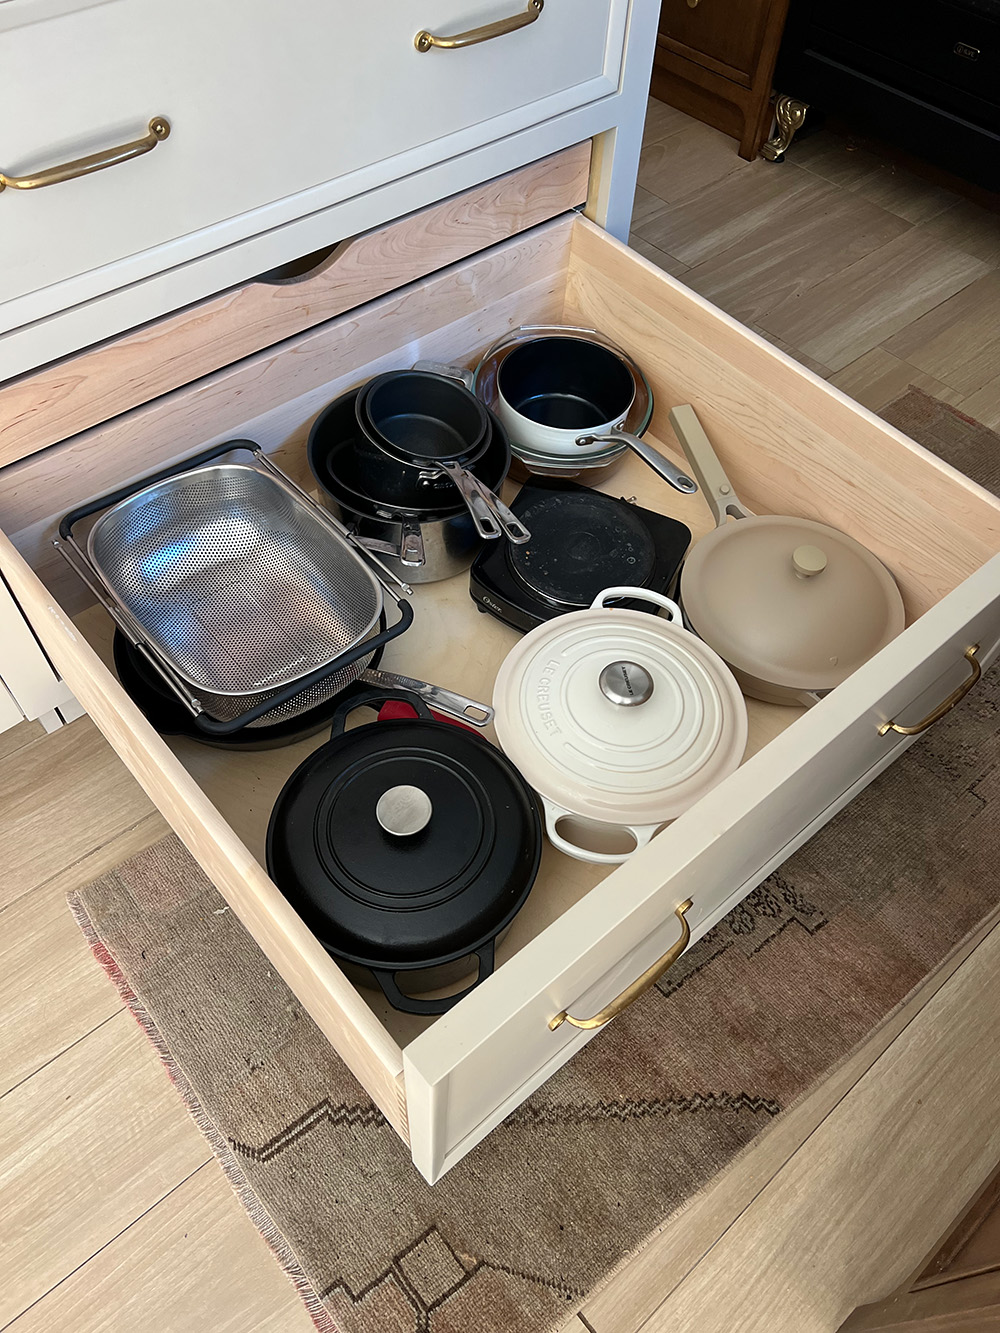 Hidden Small Appliance Storage in the Kitchen - BREPURPOSED